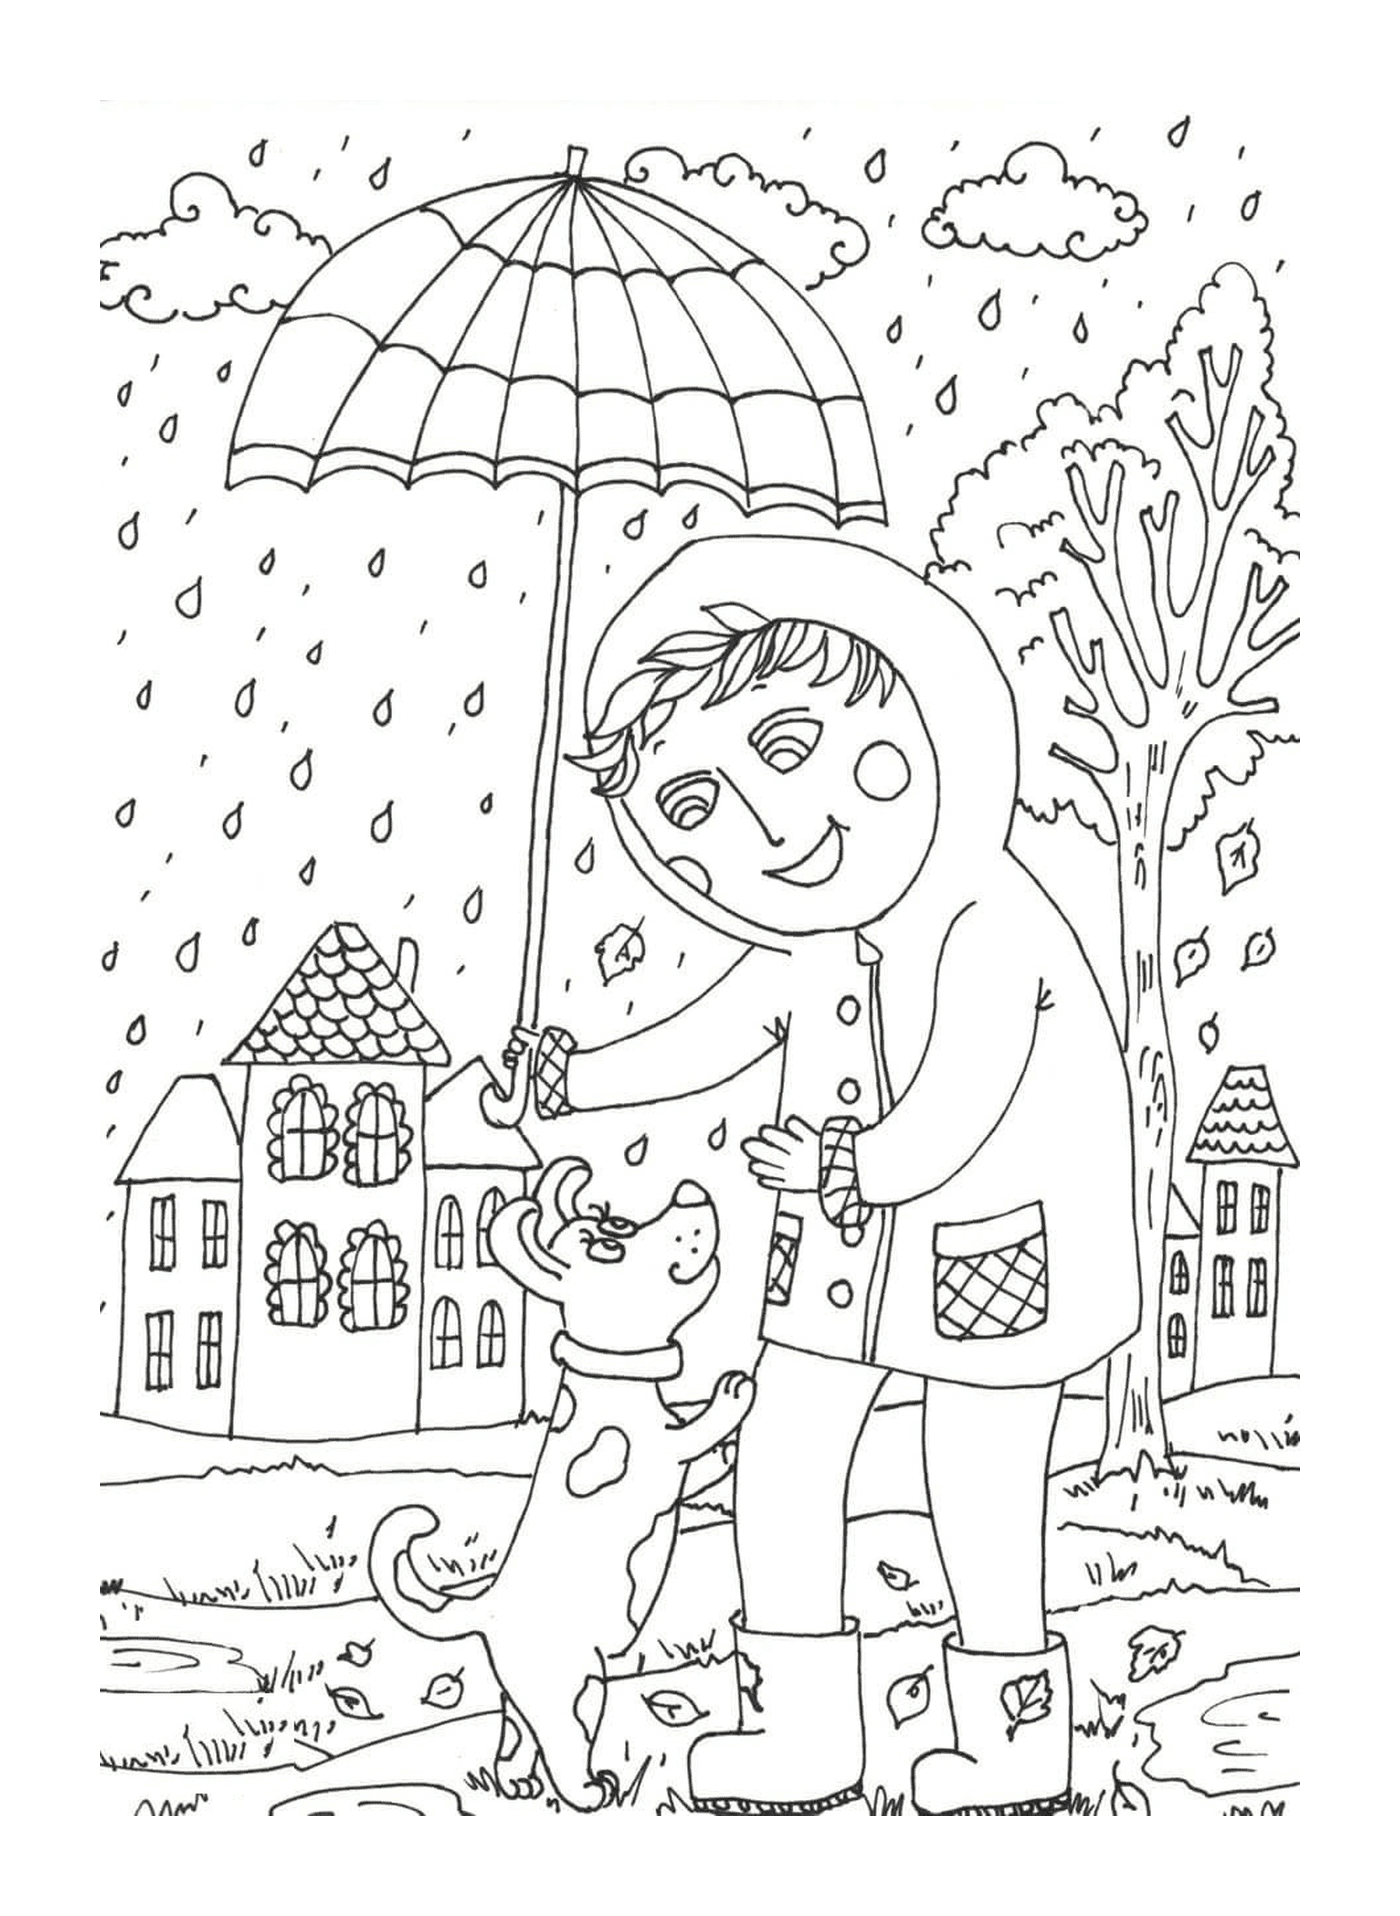  Un bambino con un ombrello sopra un cane 